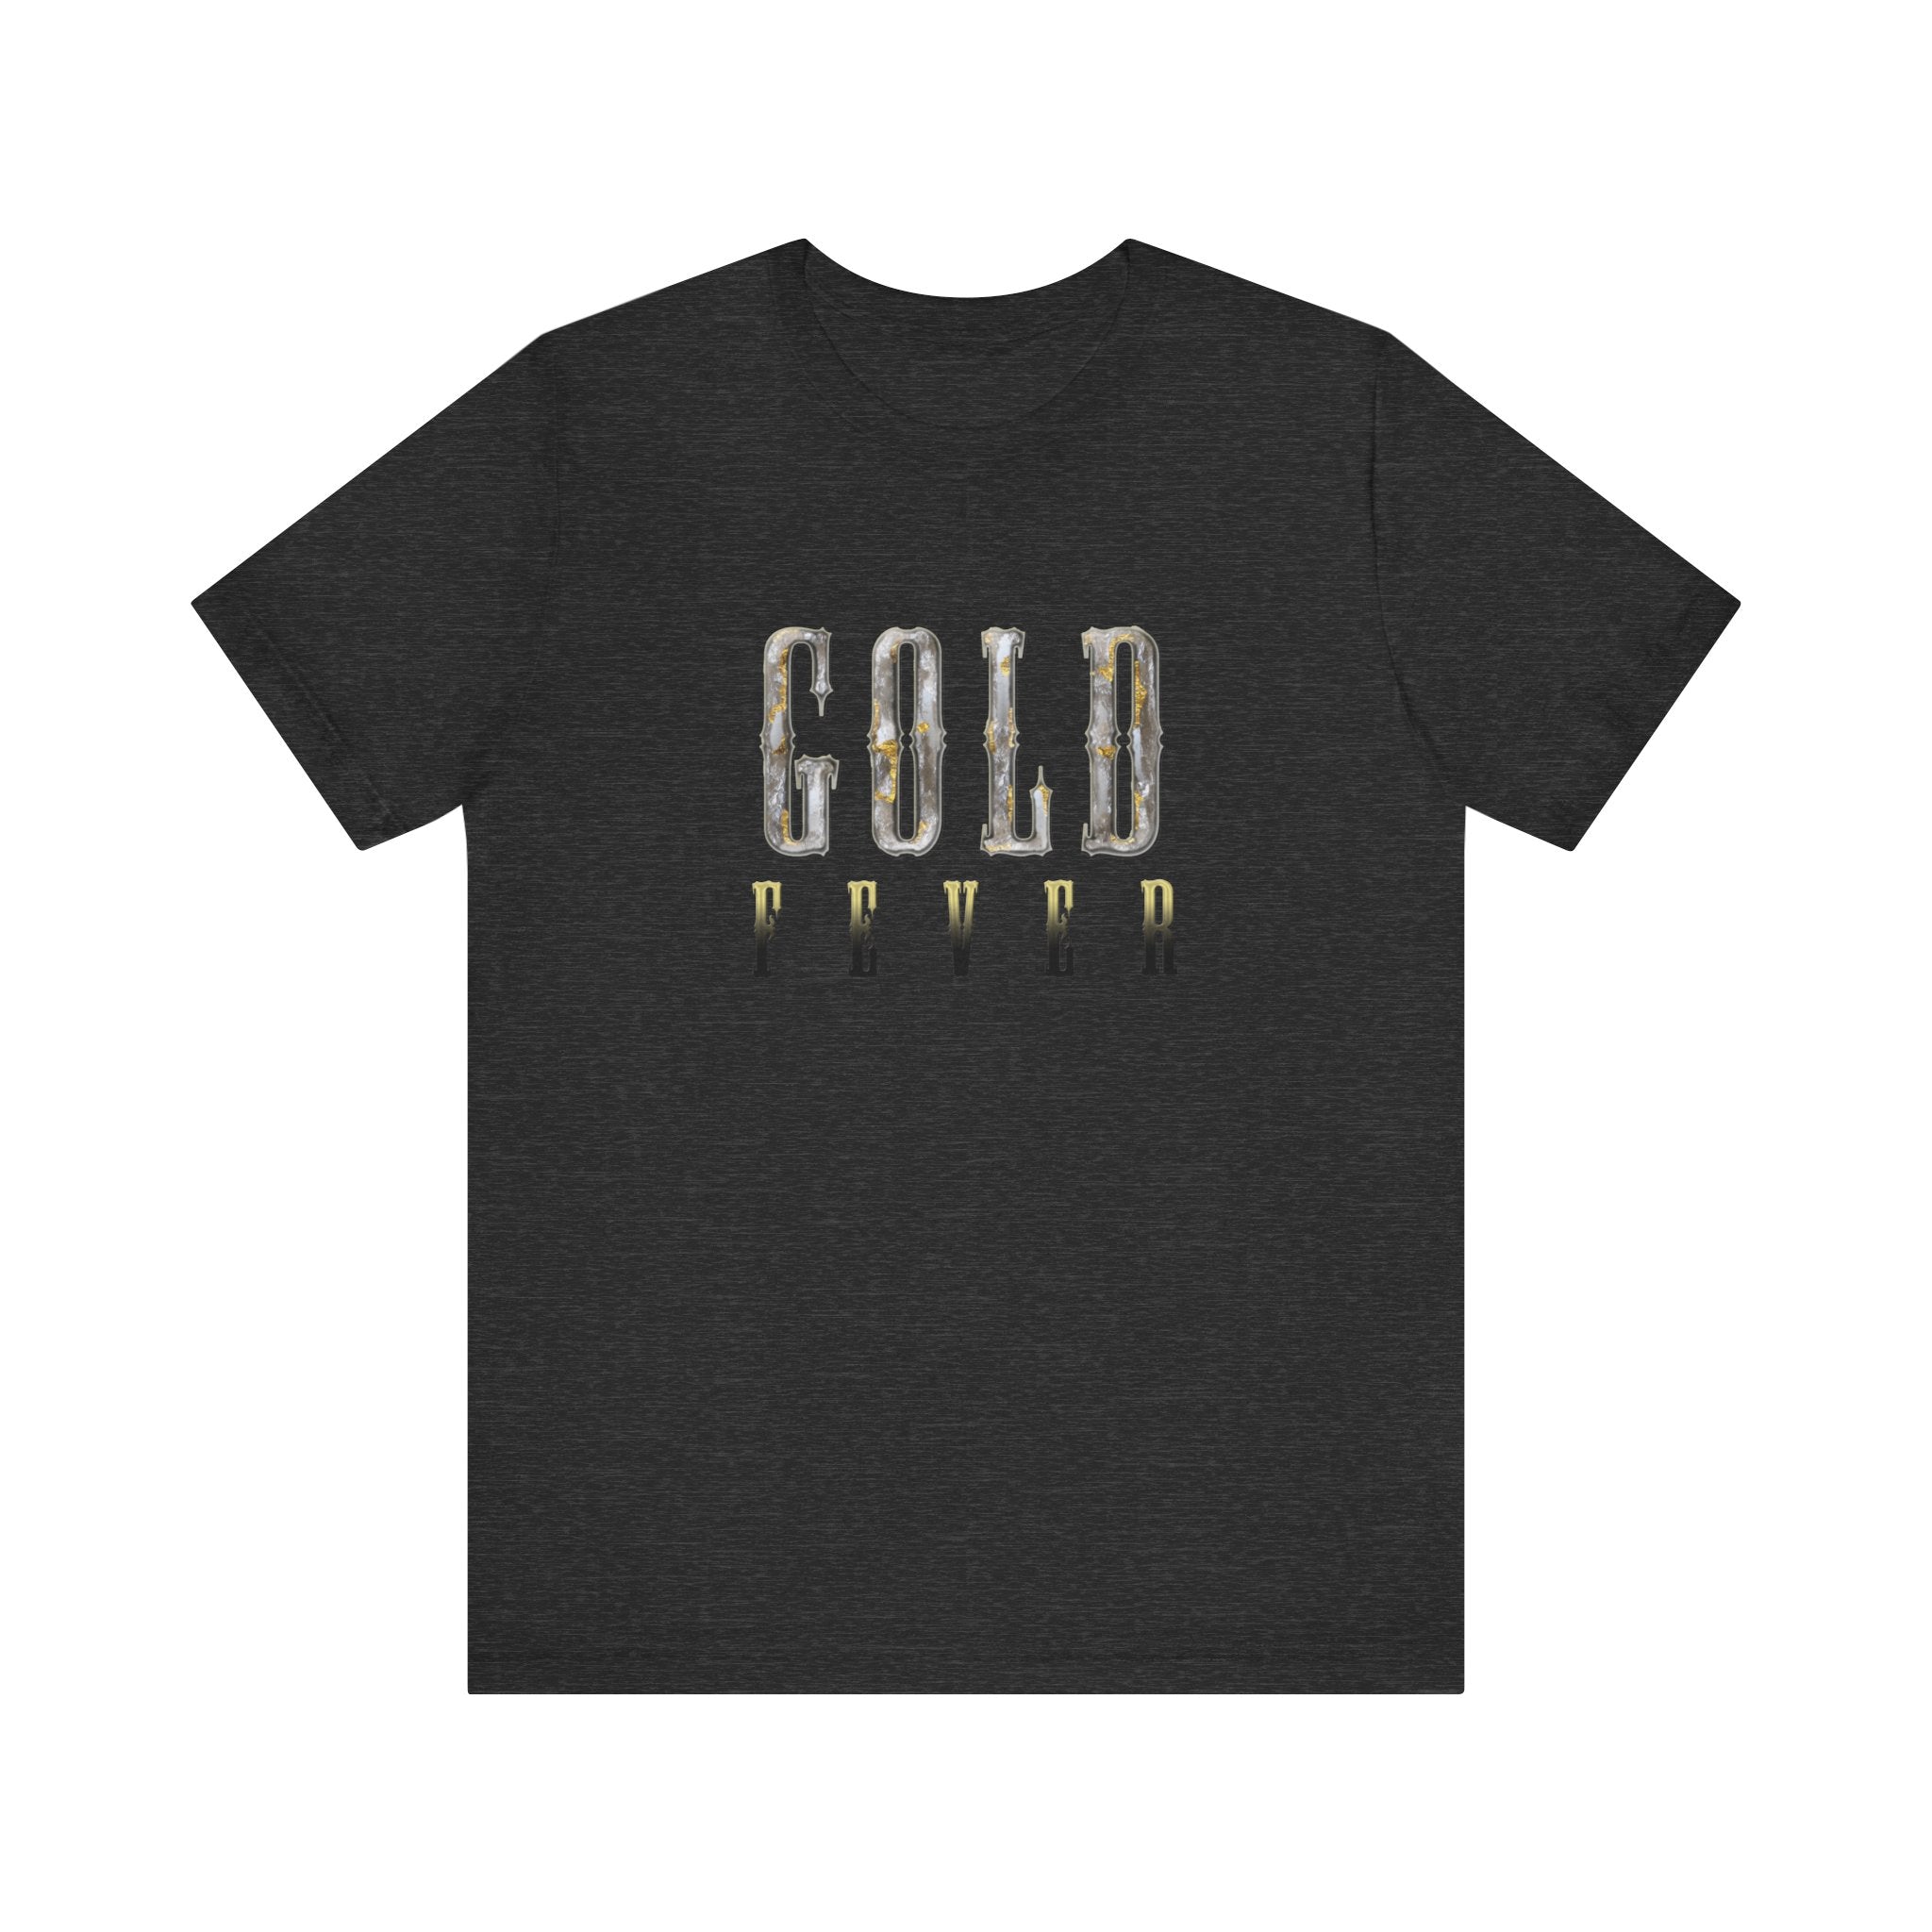 The OG Gold Fever T-Shirt